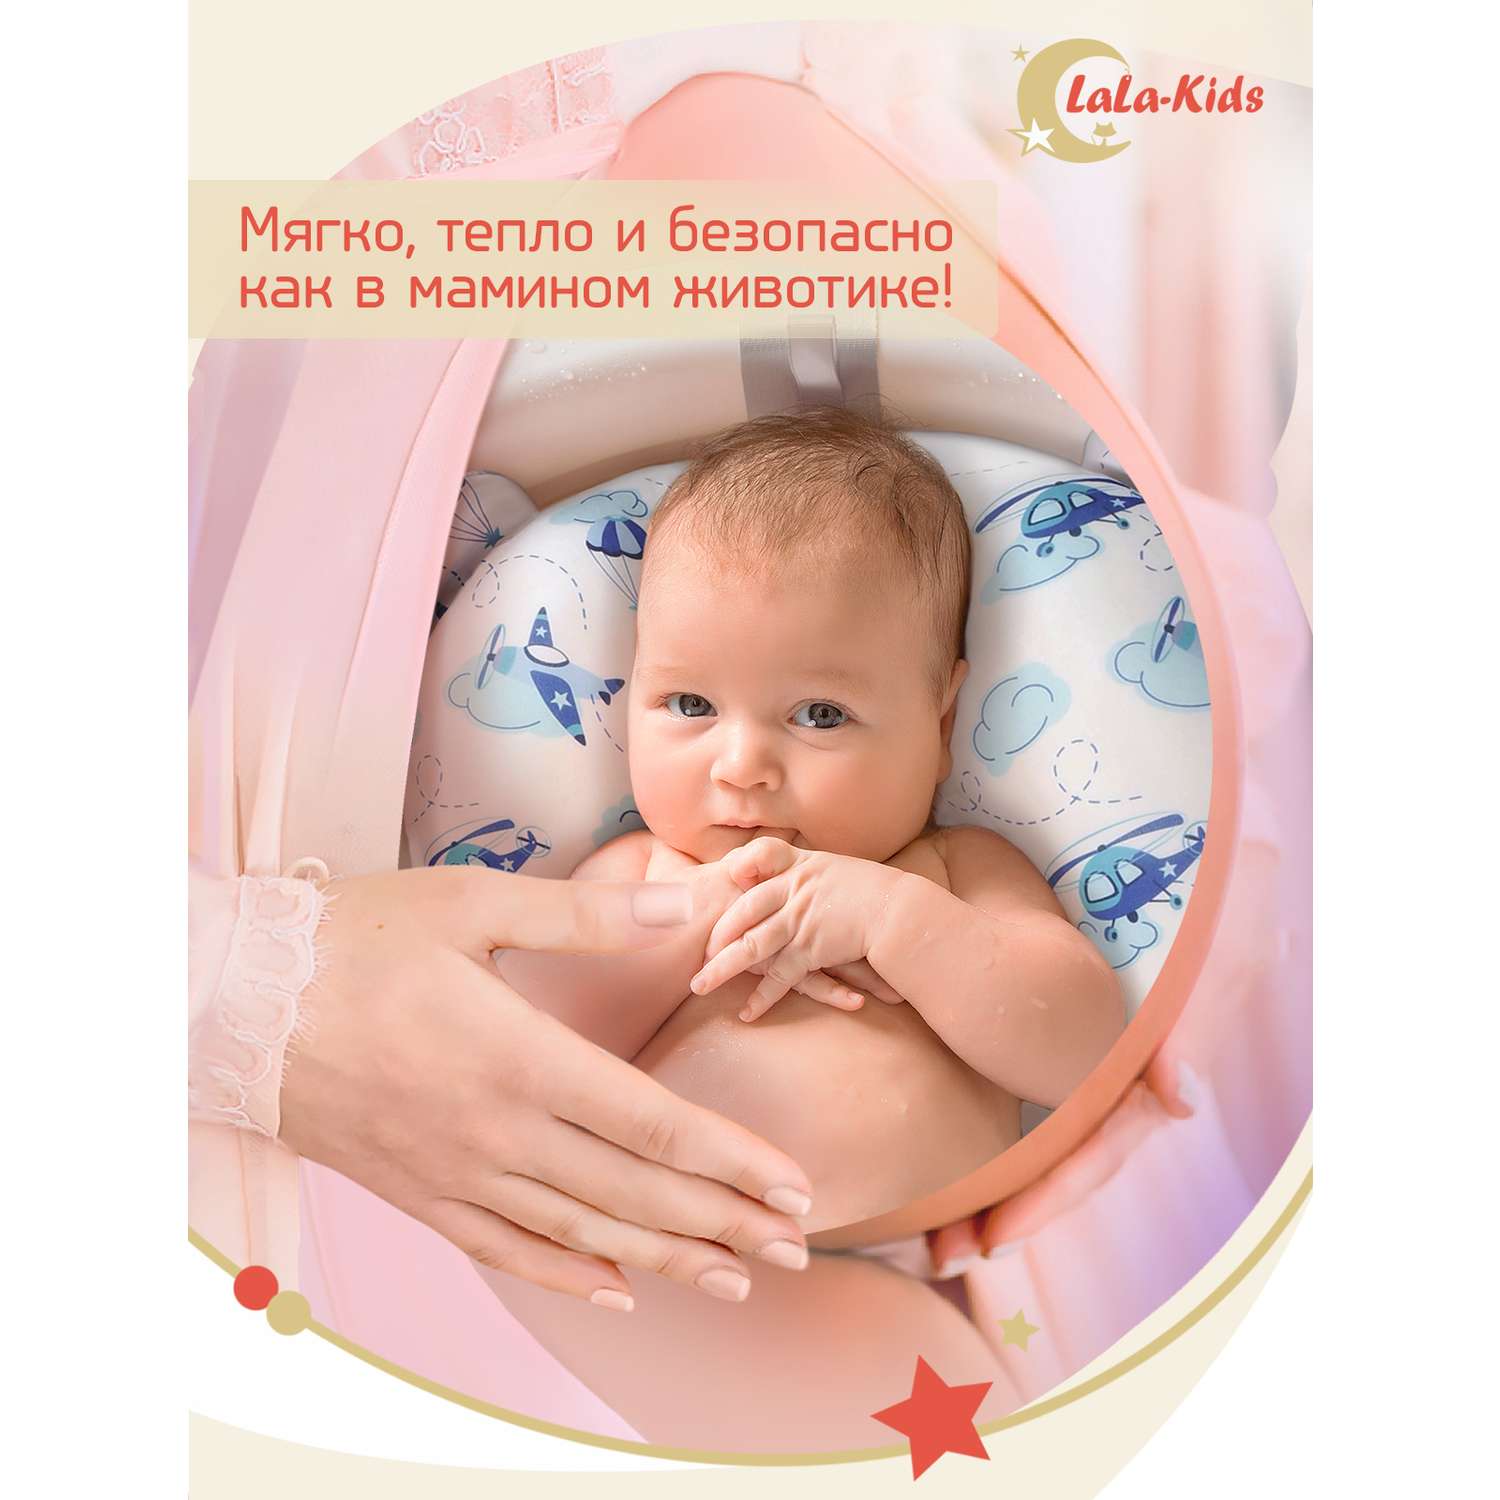 Складная ванночка LaLa-Kids для купания новорожденных с матрасиком в комплекте - фото 14